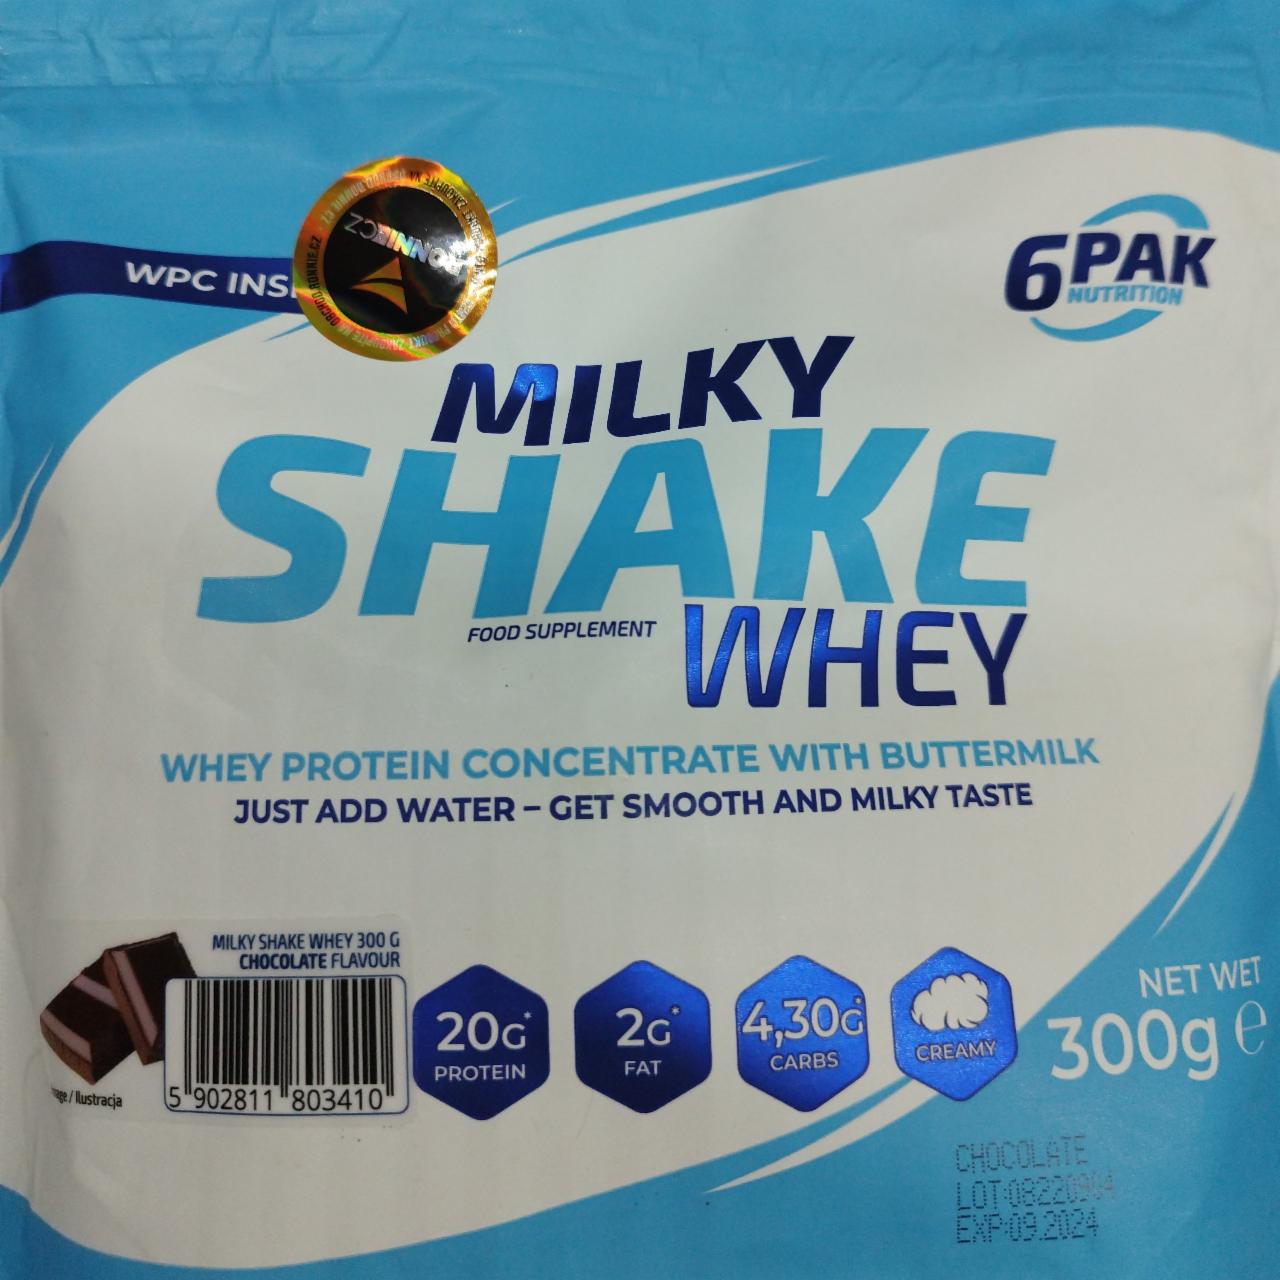 Zdjęcia - Milky Shake Whey Chocolate 6PAK Nutrition